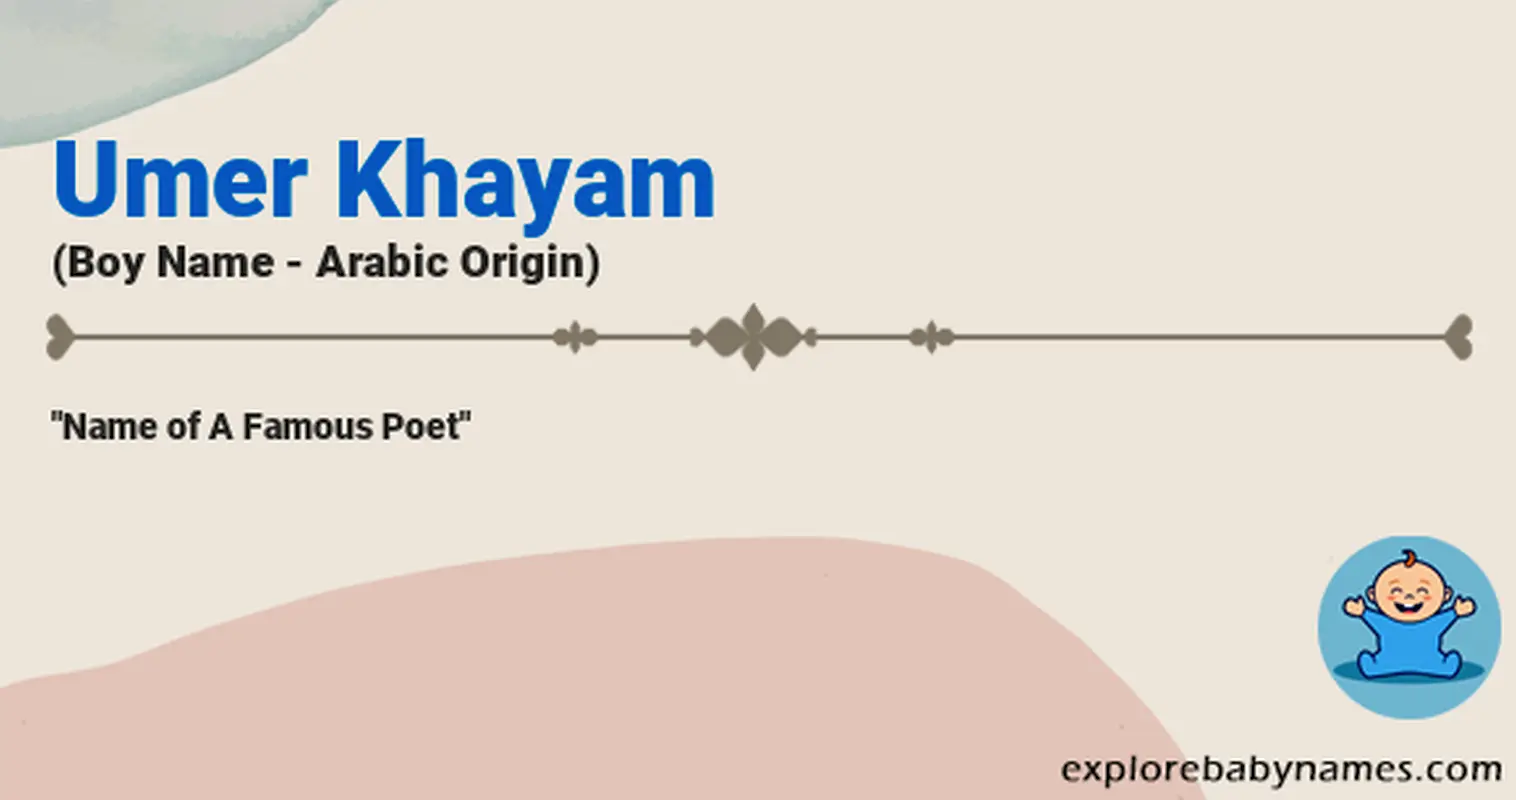 Meaning of Umer Khayam